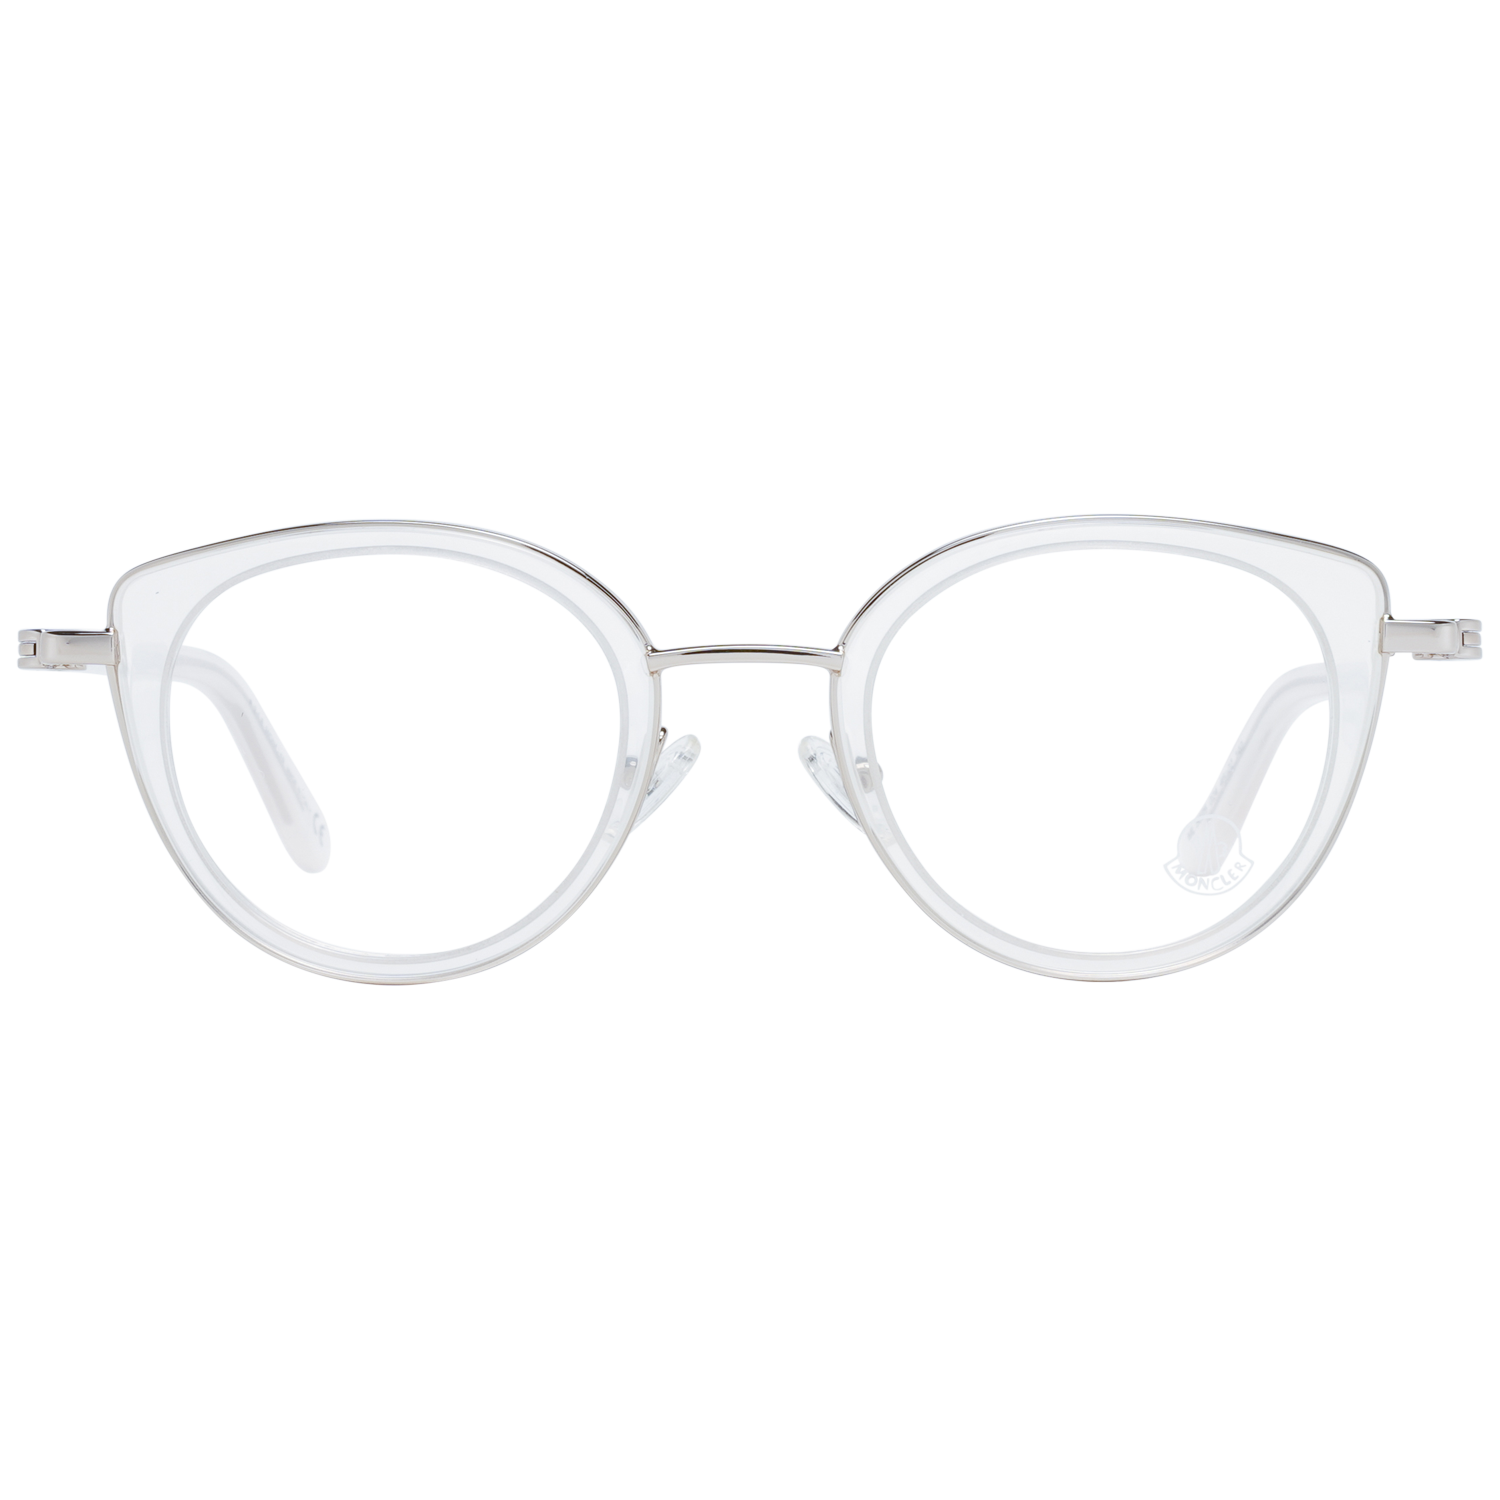 Moncler Eyeglasses Moncler Glasses Frames ML5025 024 46mm Eyeglasses Eyewear UK USA Australia 